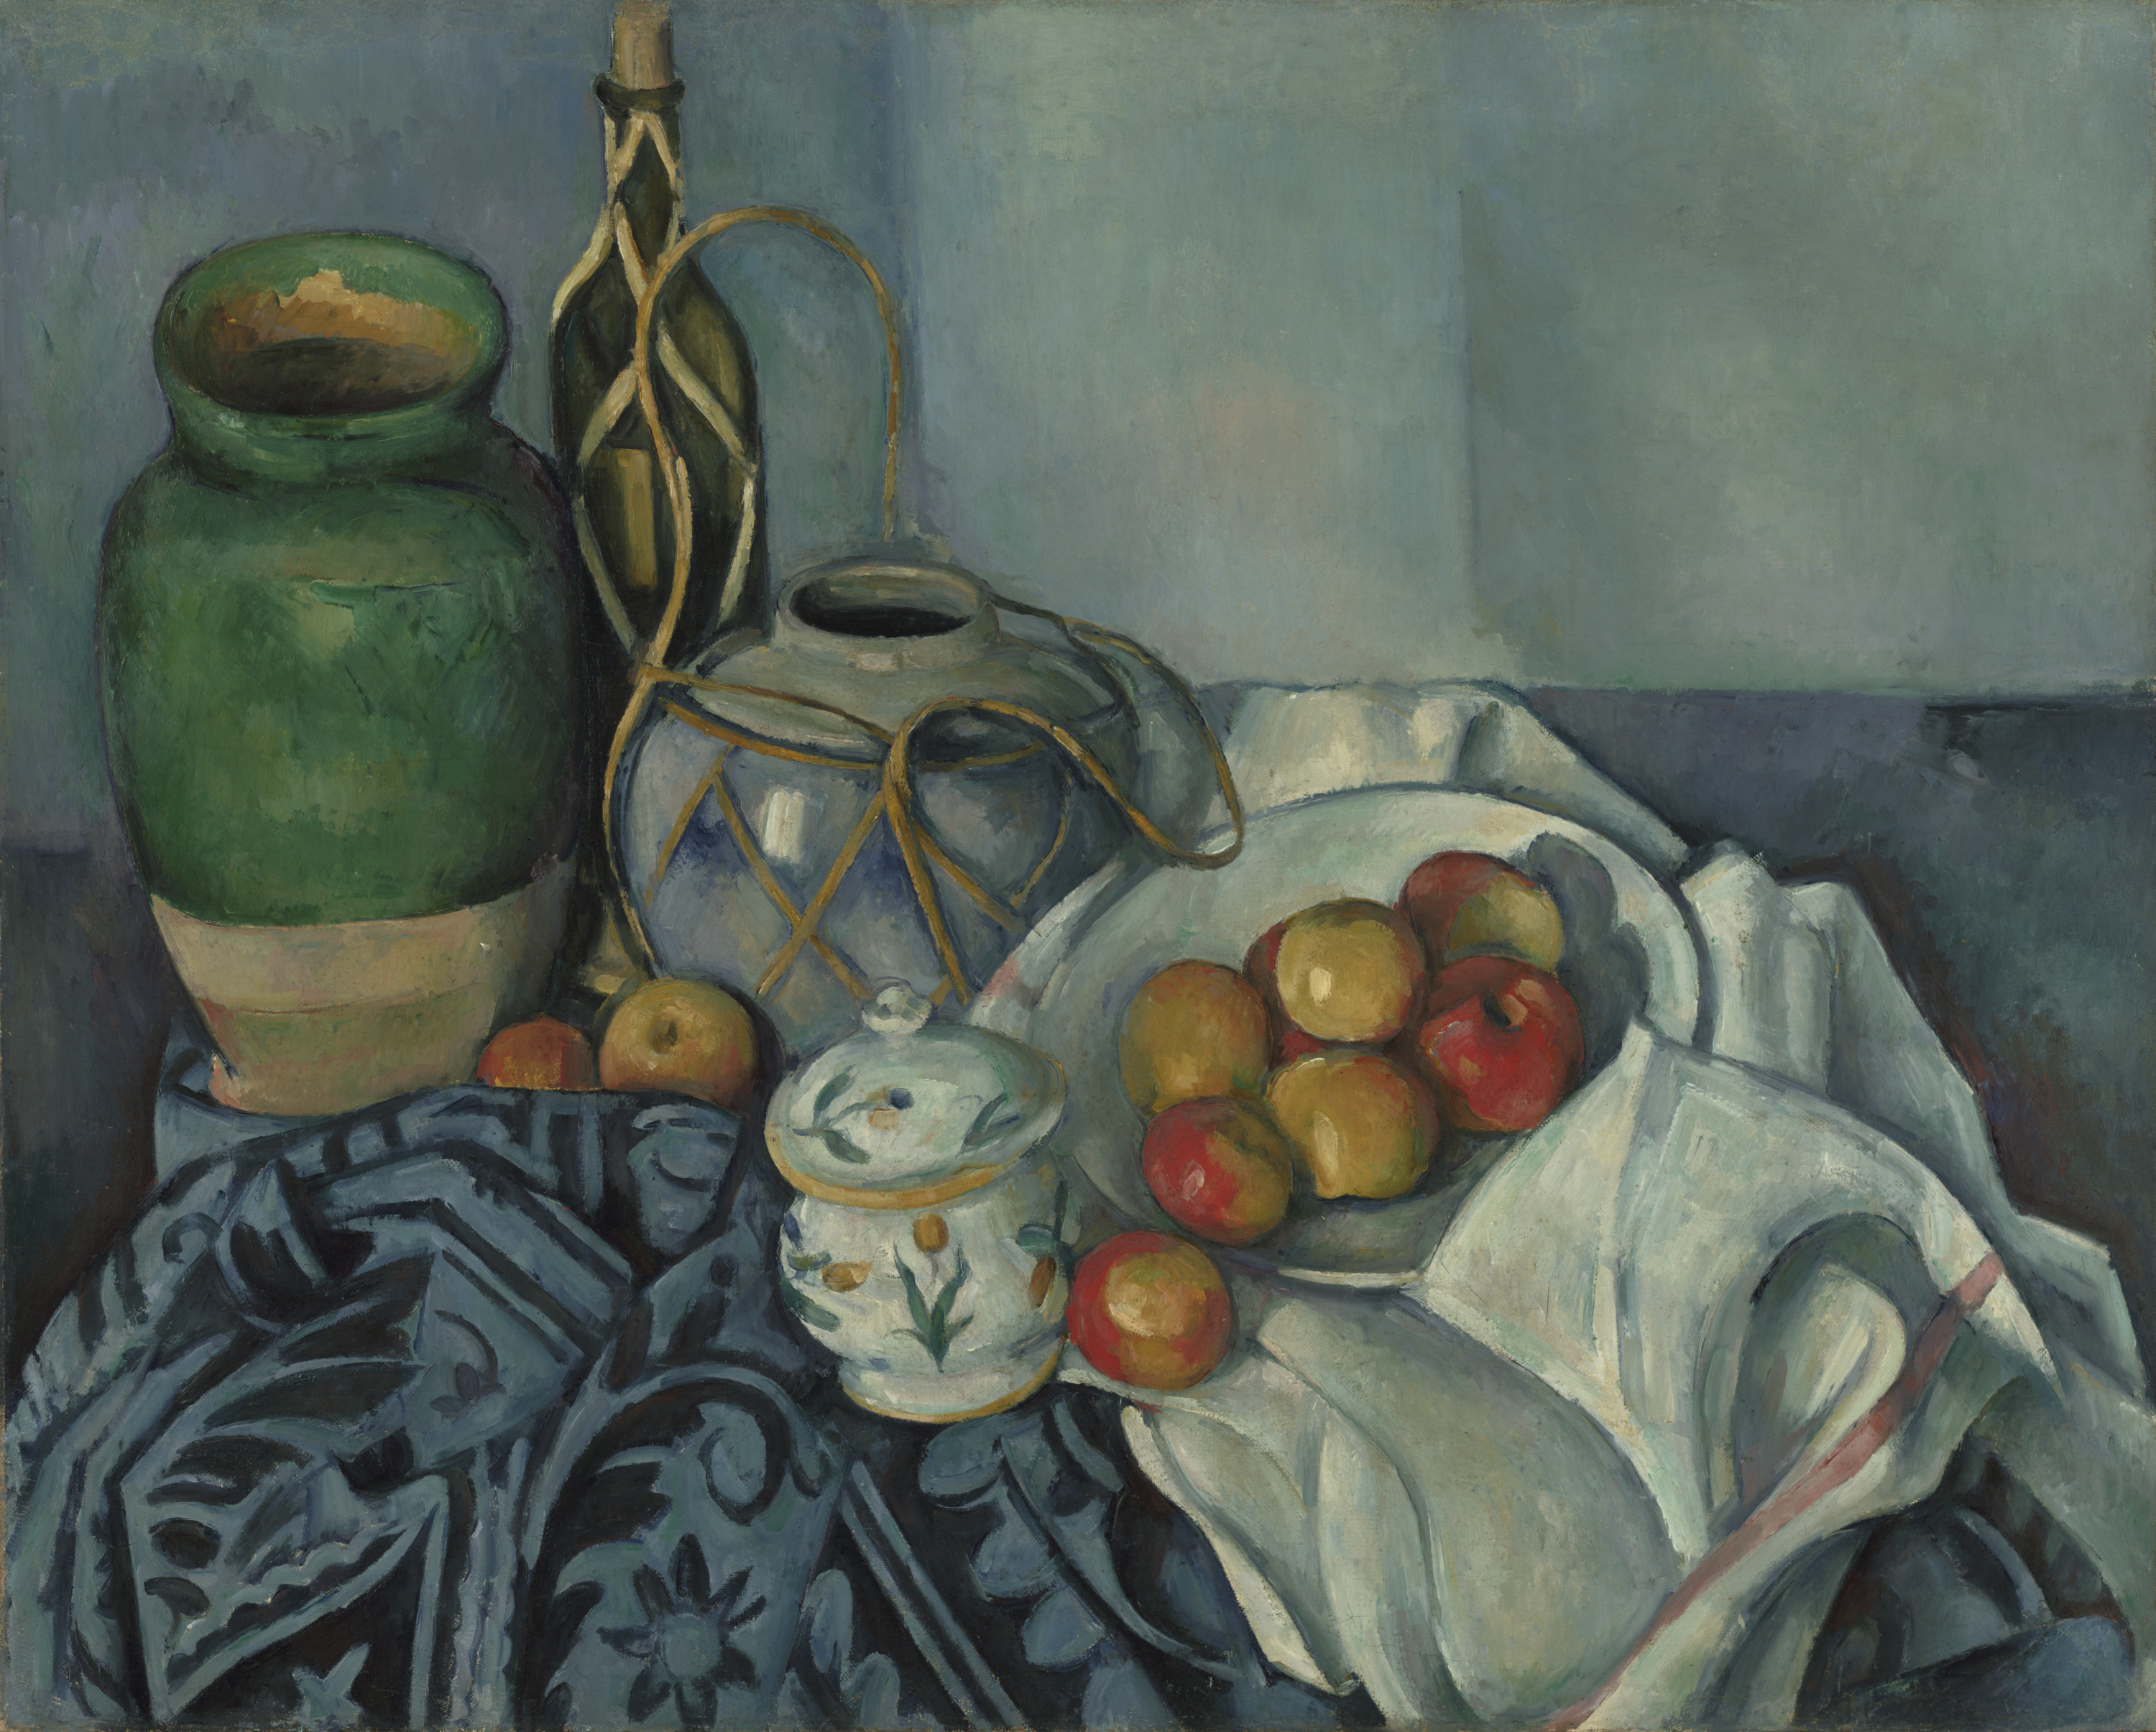 सेब के साथ स्थिर वस्तु चित्रण by Paul Cézanne - १८९३-१८९४ - ६५.४ × ८१.६ सेमी 